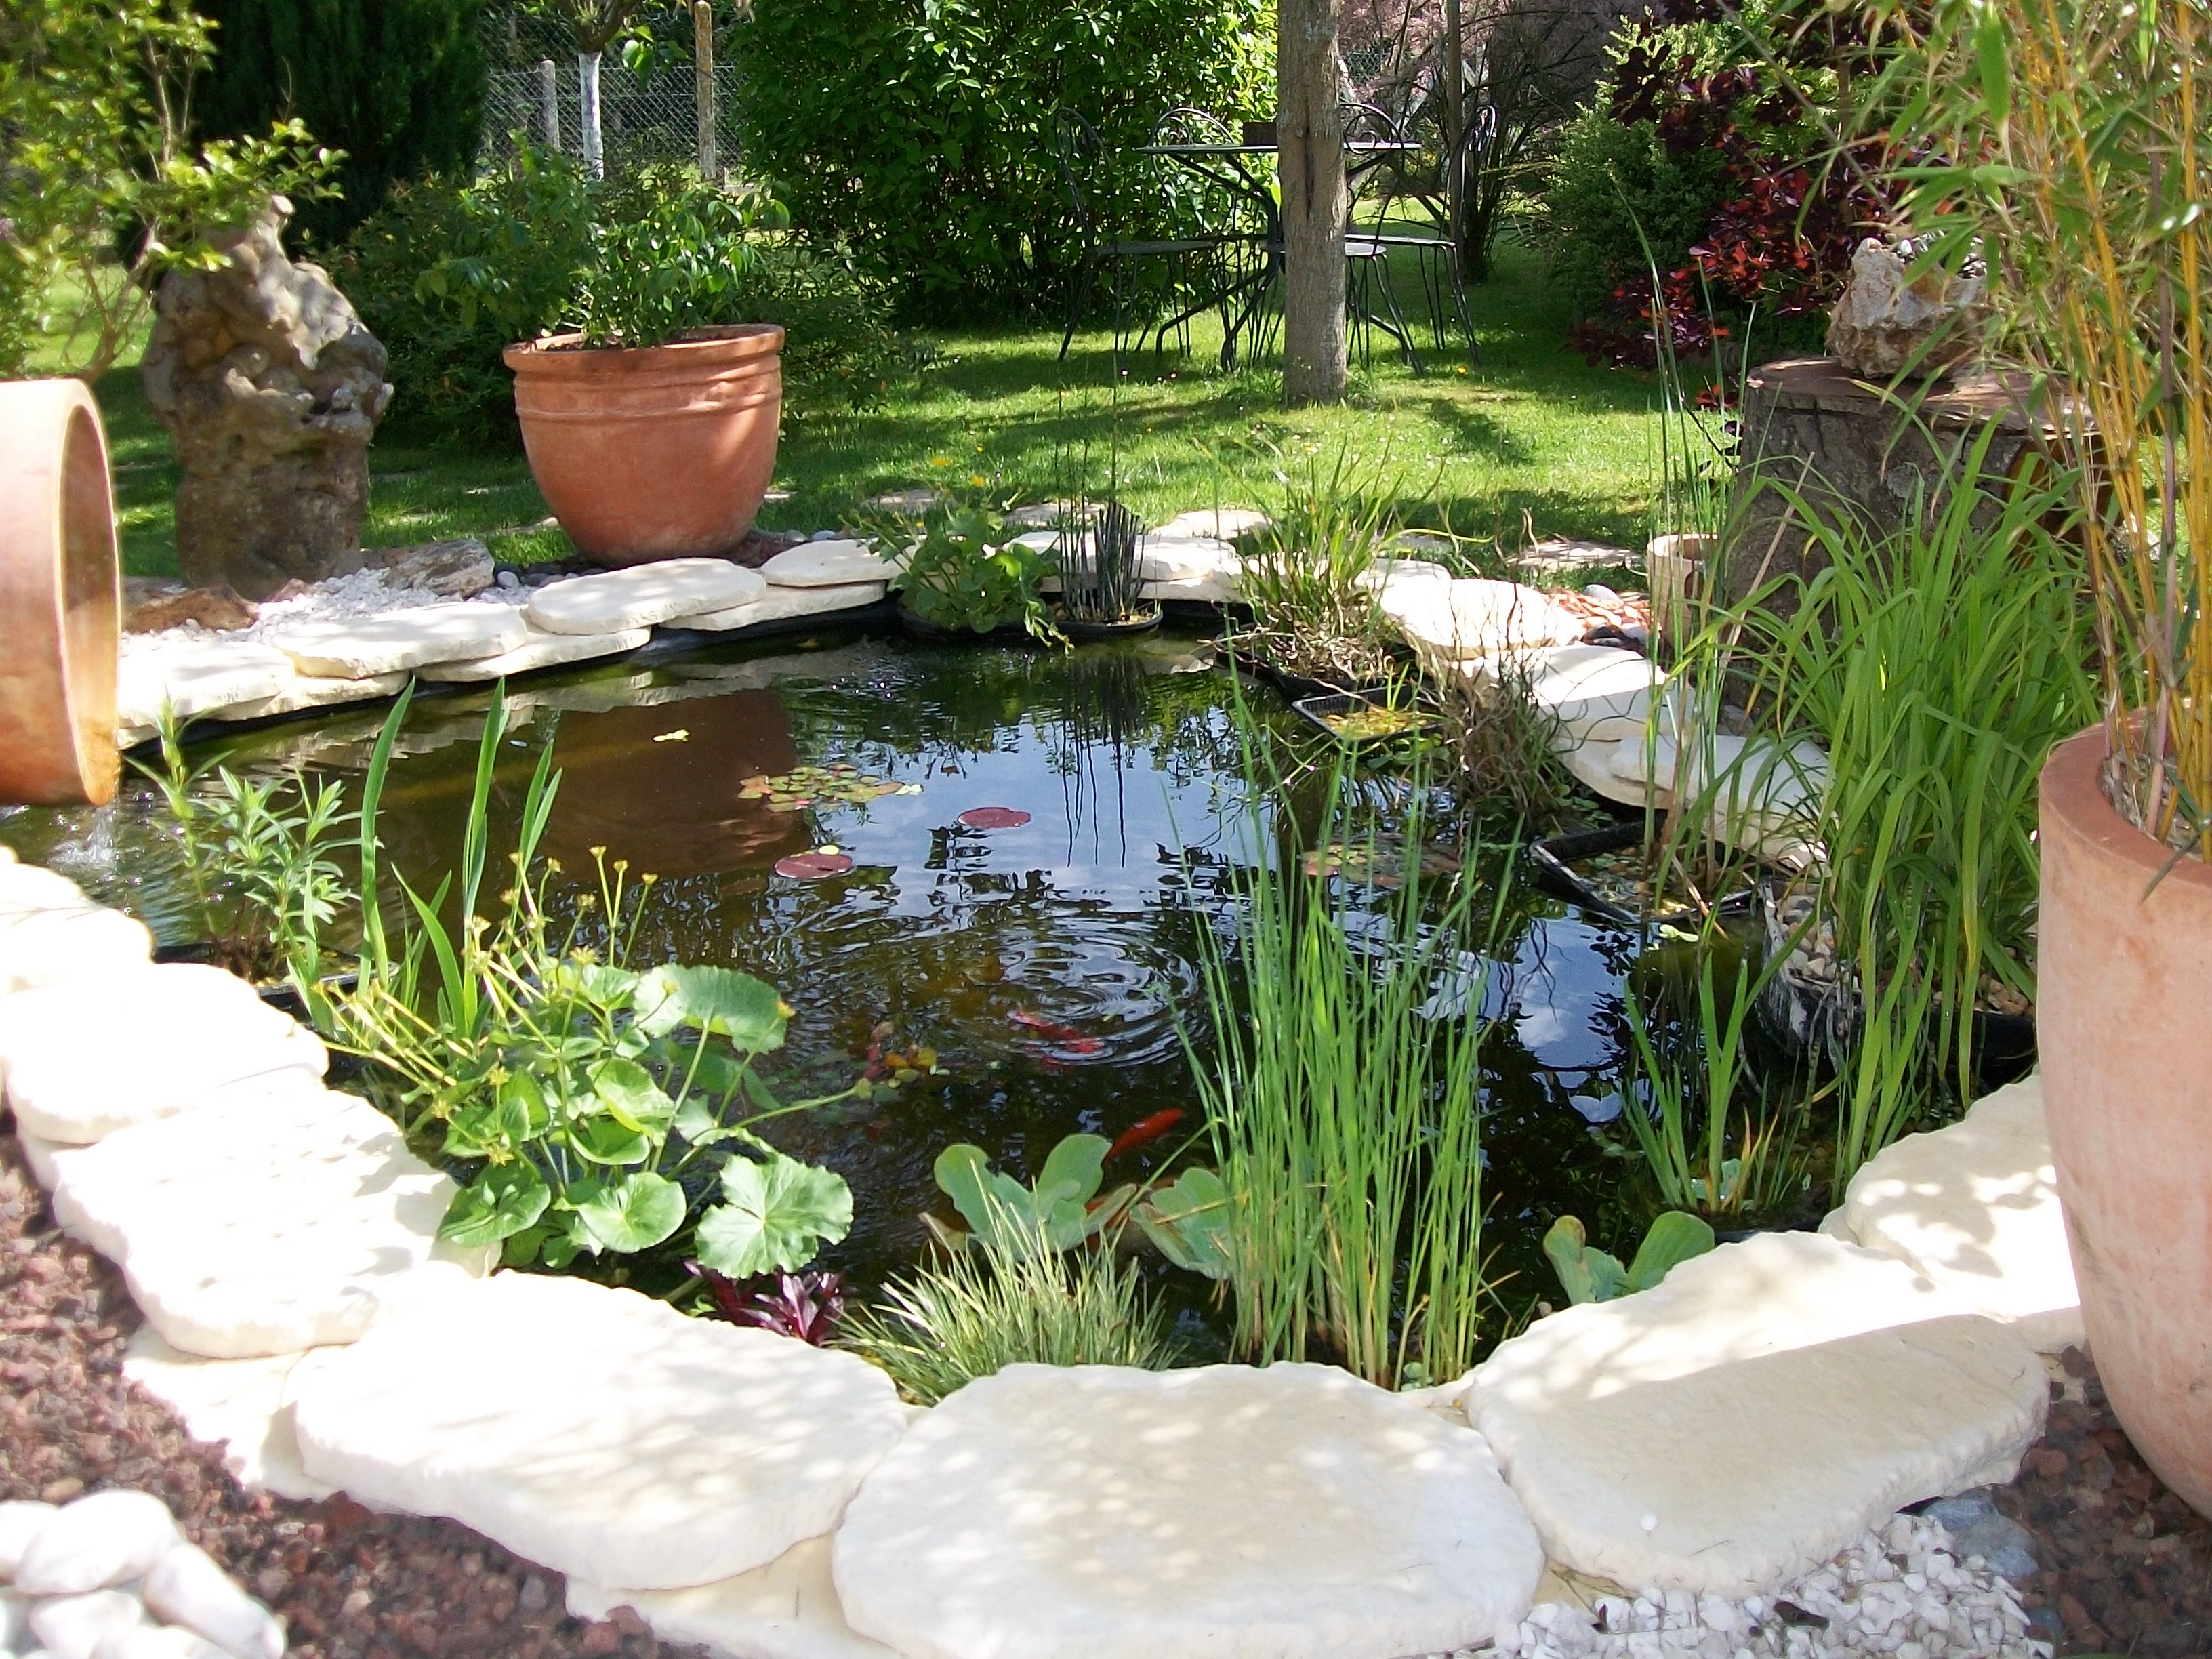 Comment faire une mare ou un bassin dans un jardin?